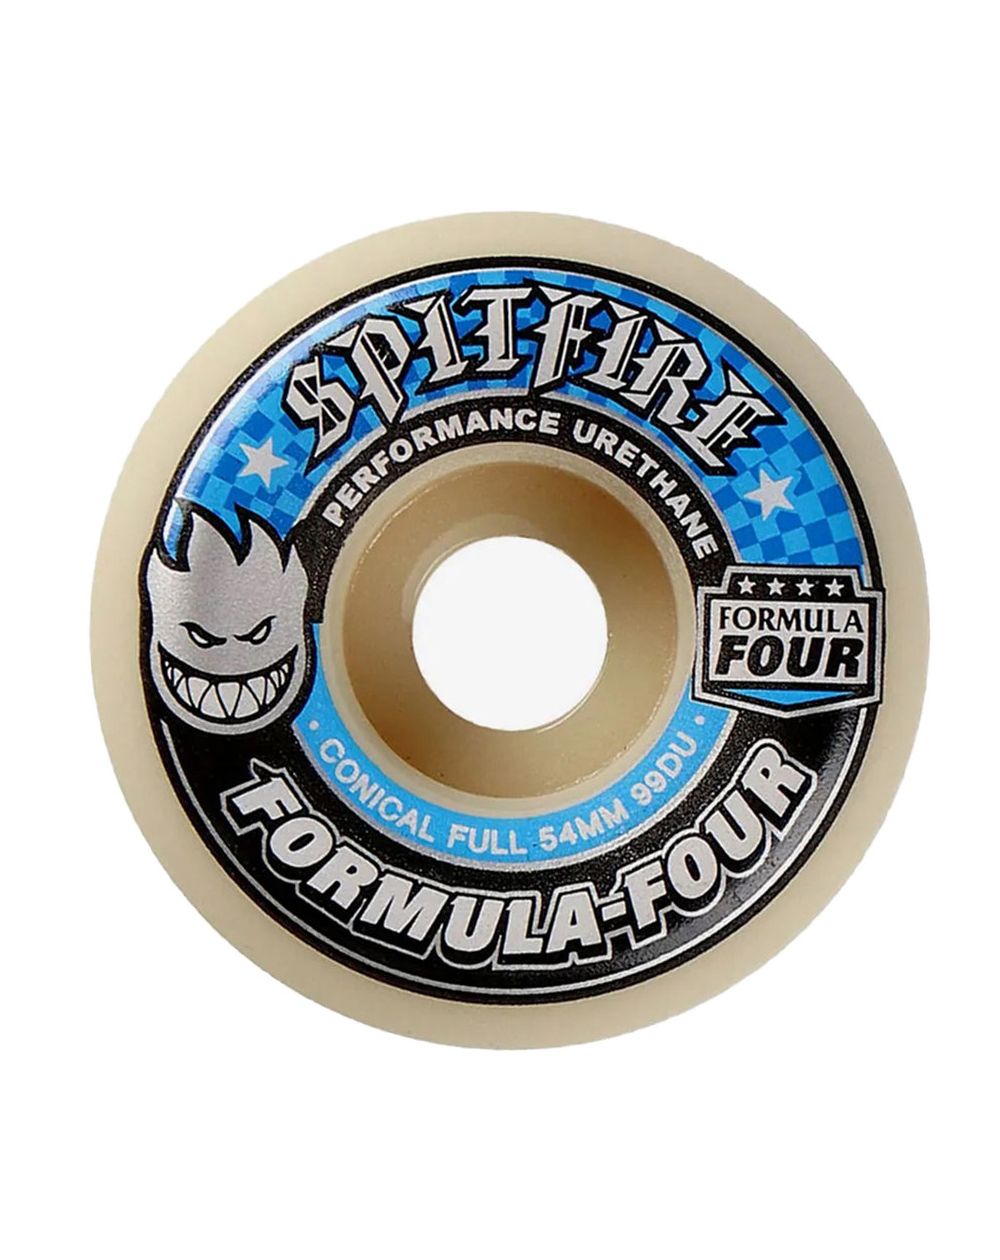  Spitfire formula four conical full 54mm 99d (set of 4) 